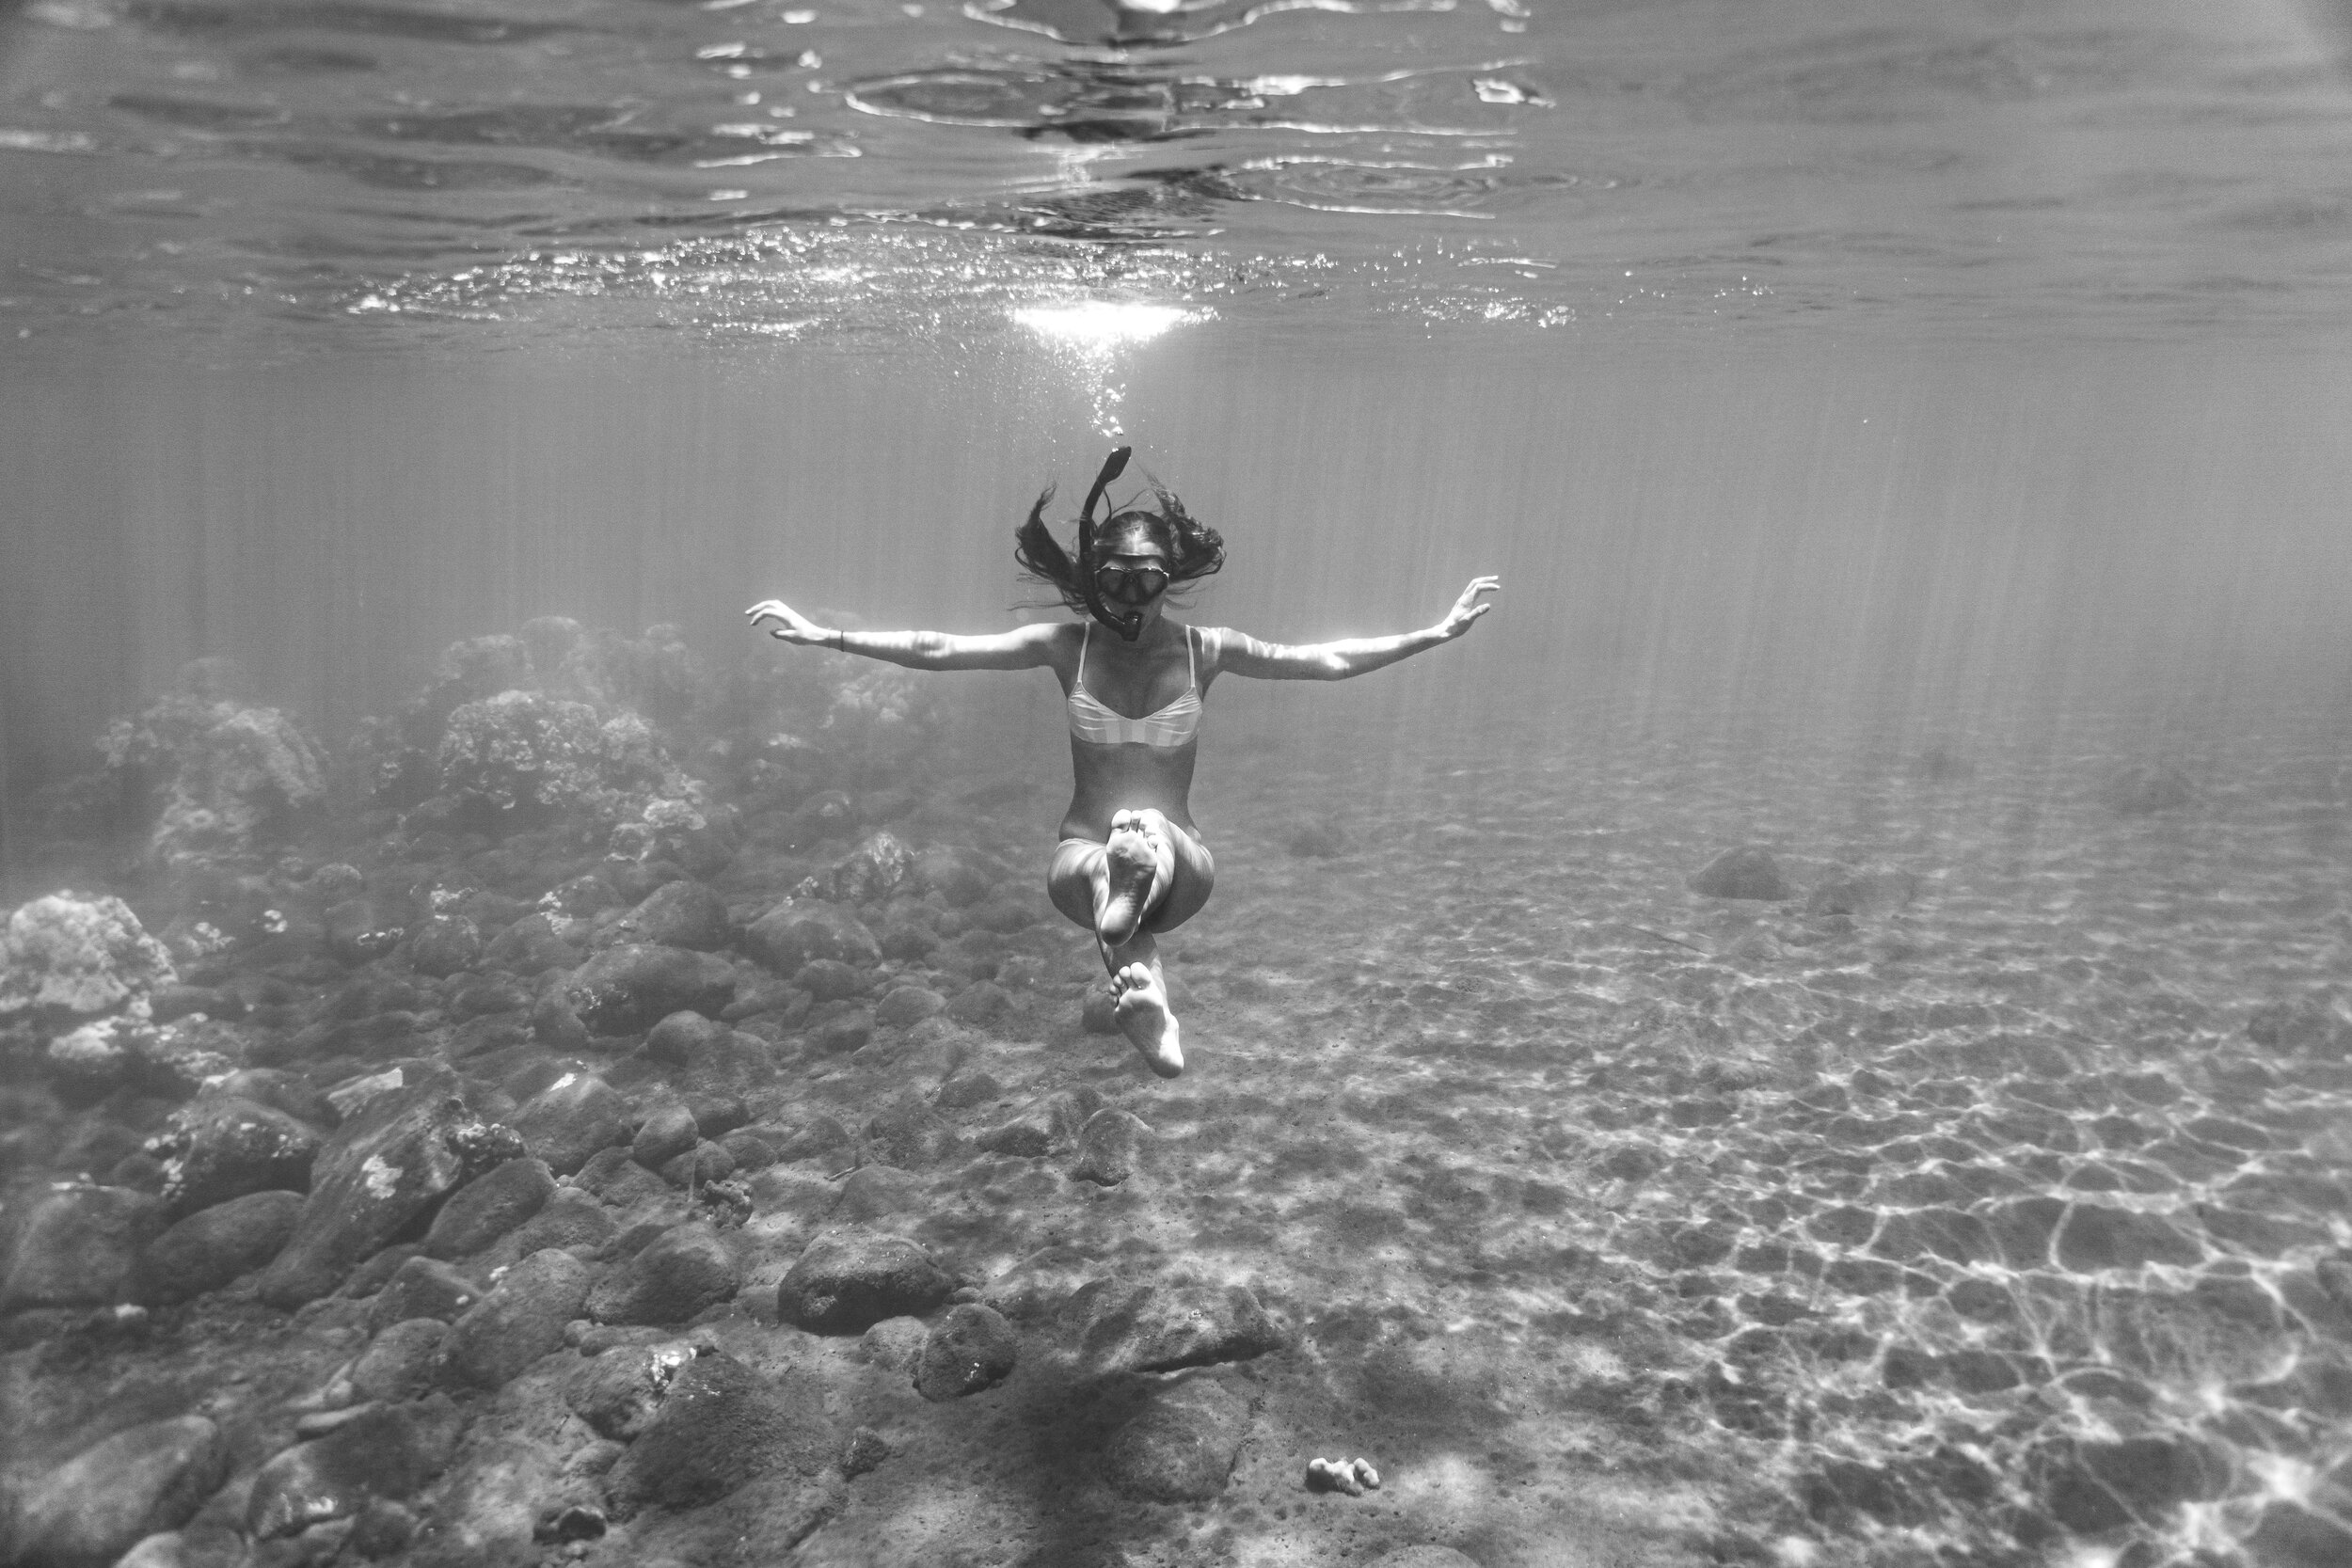 ro underwater '20 ©Rachael Zimmerman Photography-100920.jpg